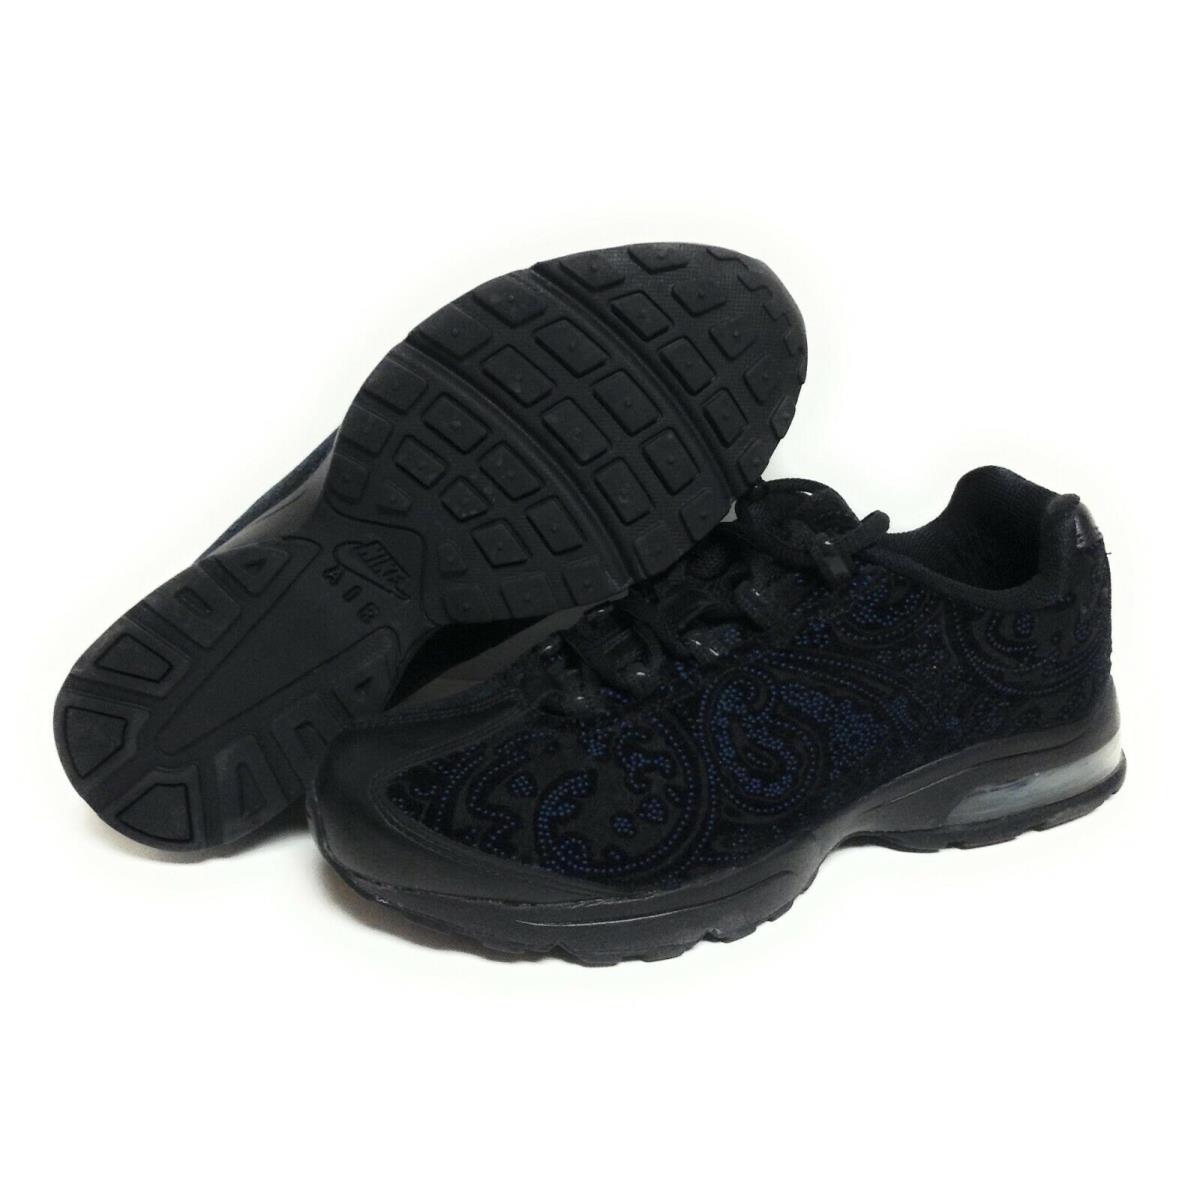 Womens Nike Air Max `95 Zen Premium 314043 001 2007 Deadstock B Sneakers Shoes - Black